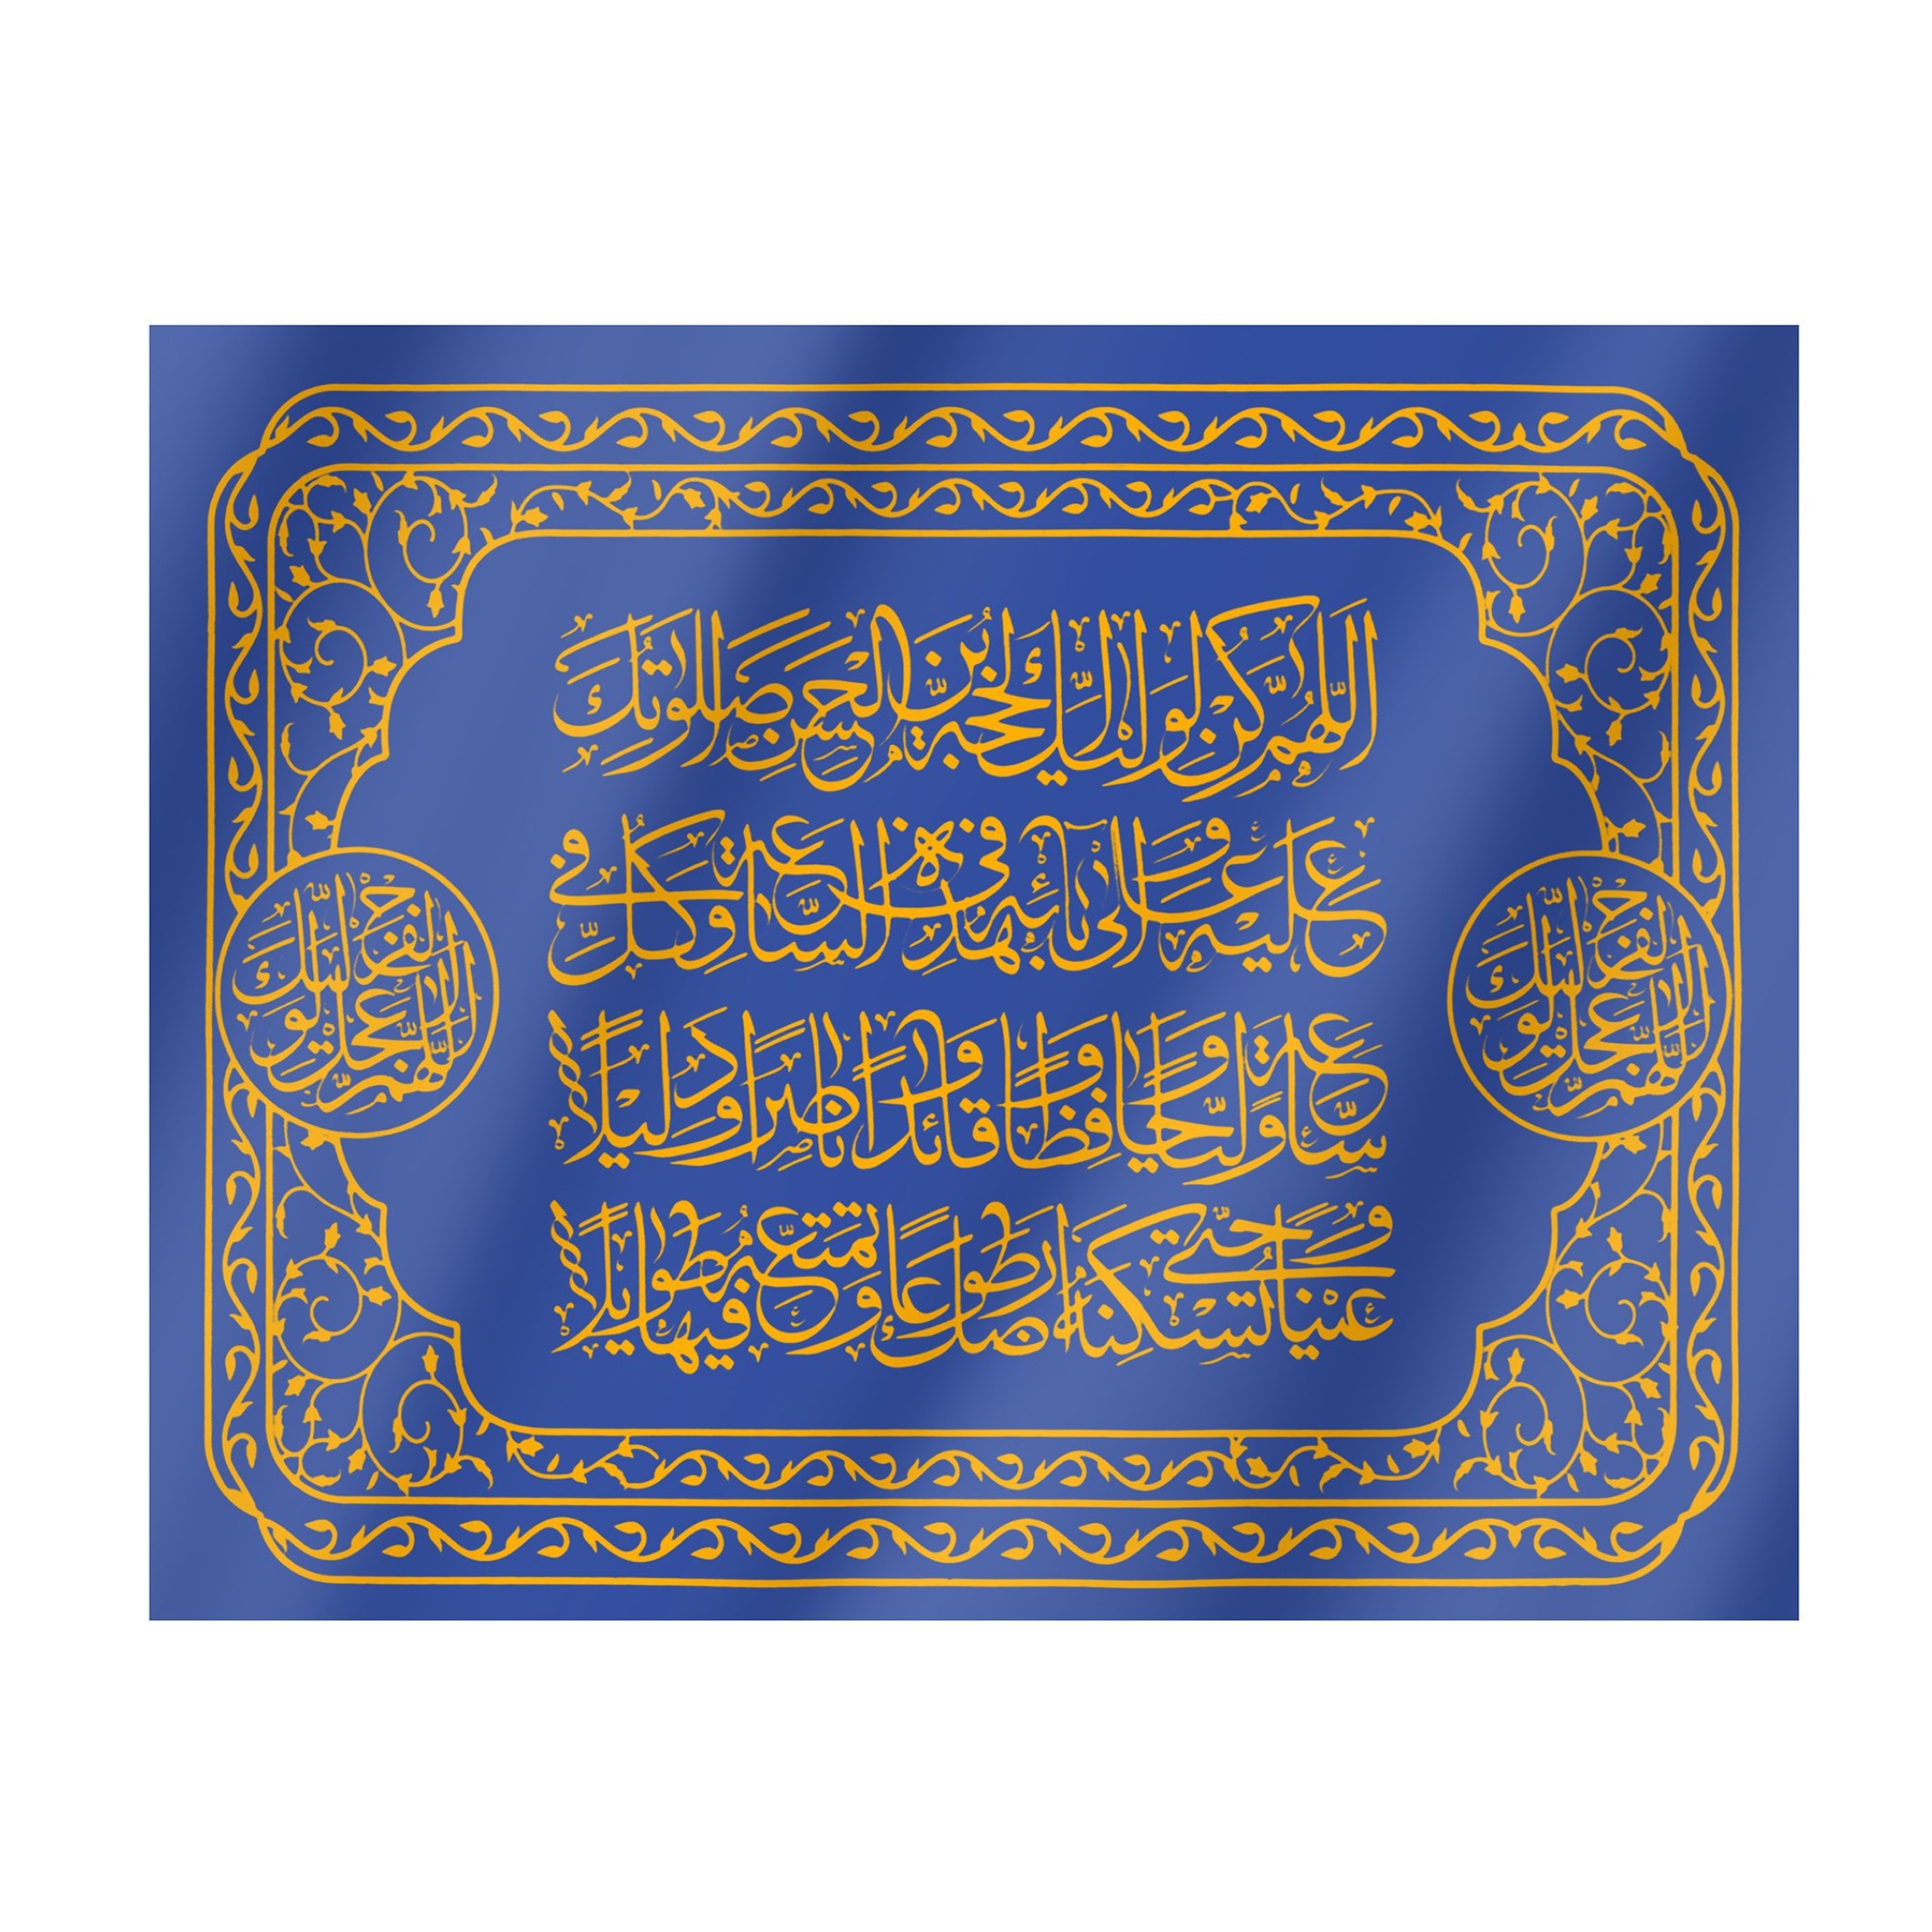 پرچم مدل مذهبی دعای سلامتی امام عصر کد 20001412